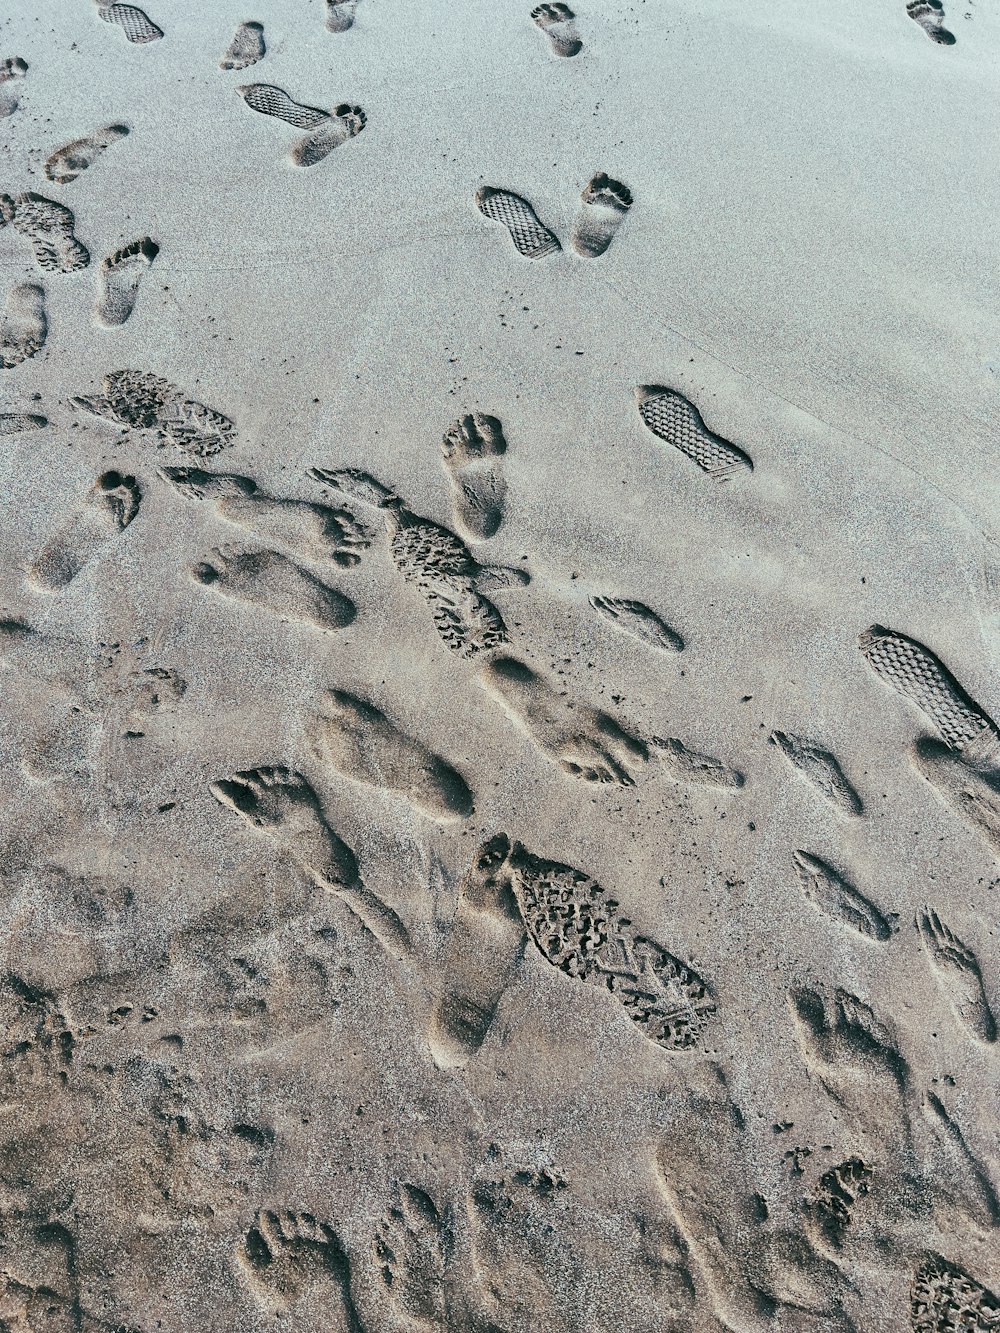 Impronte nella sabbia di una spiaggia vicino all'oceano